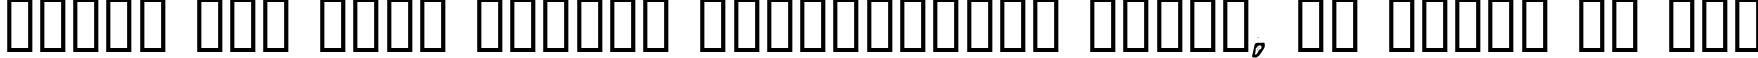 Пример написания шрифтом LogJam Inline текста на русском